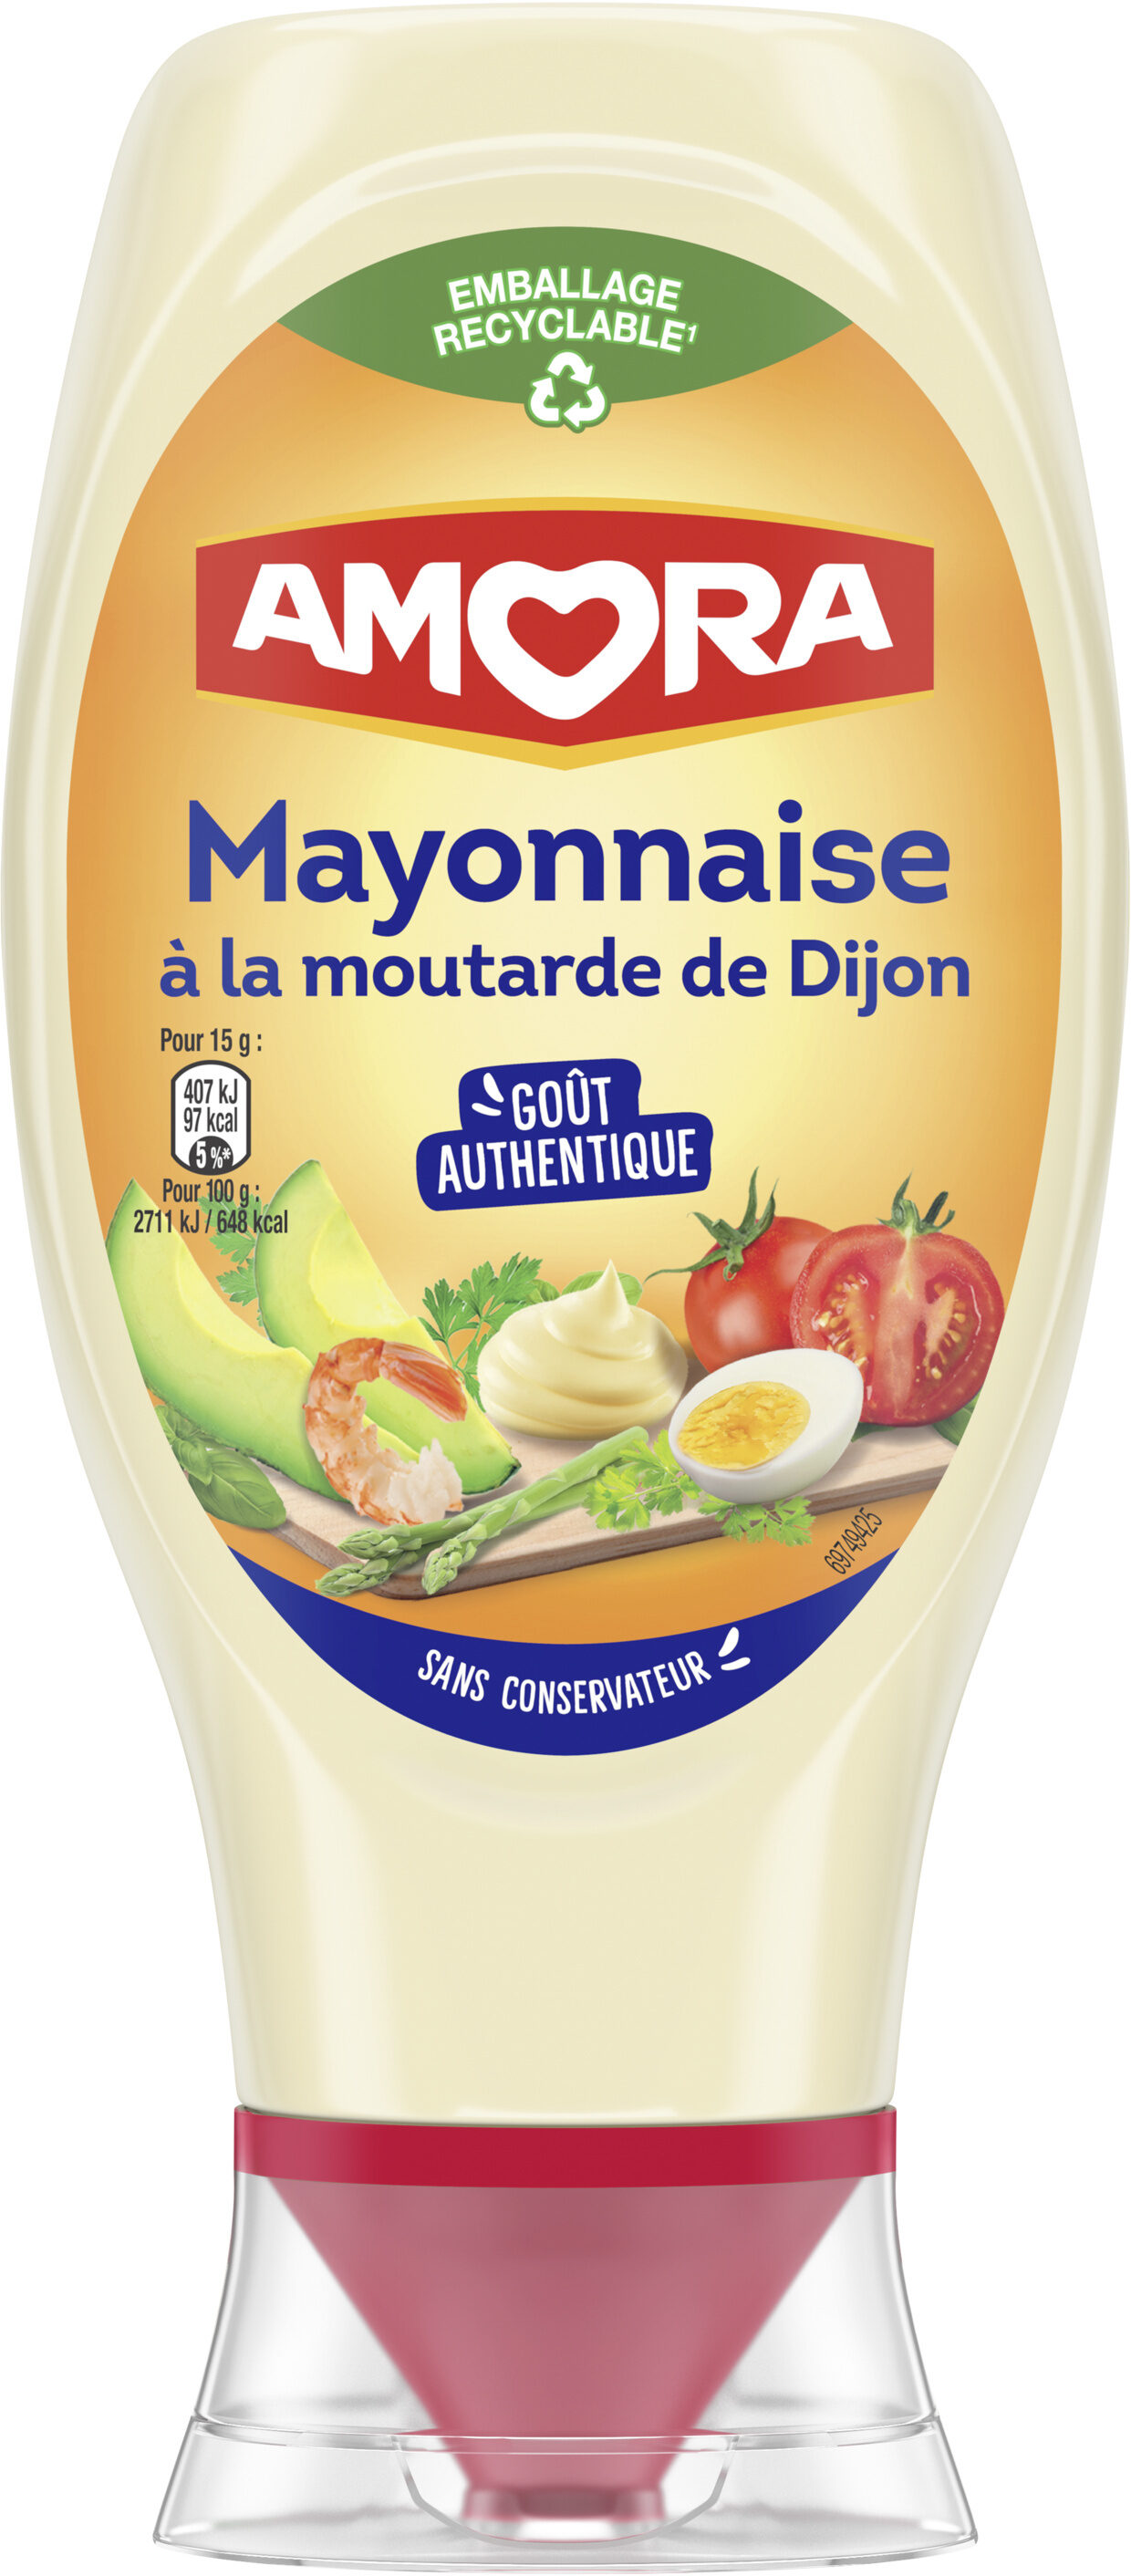 Amora Mayonnaise De Dijon Flacon Souple 415g - Prodotto - fr